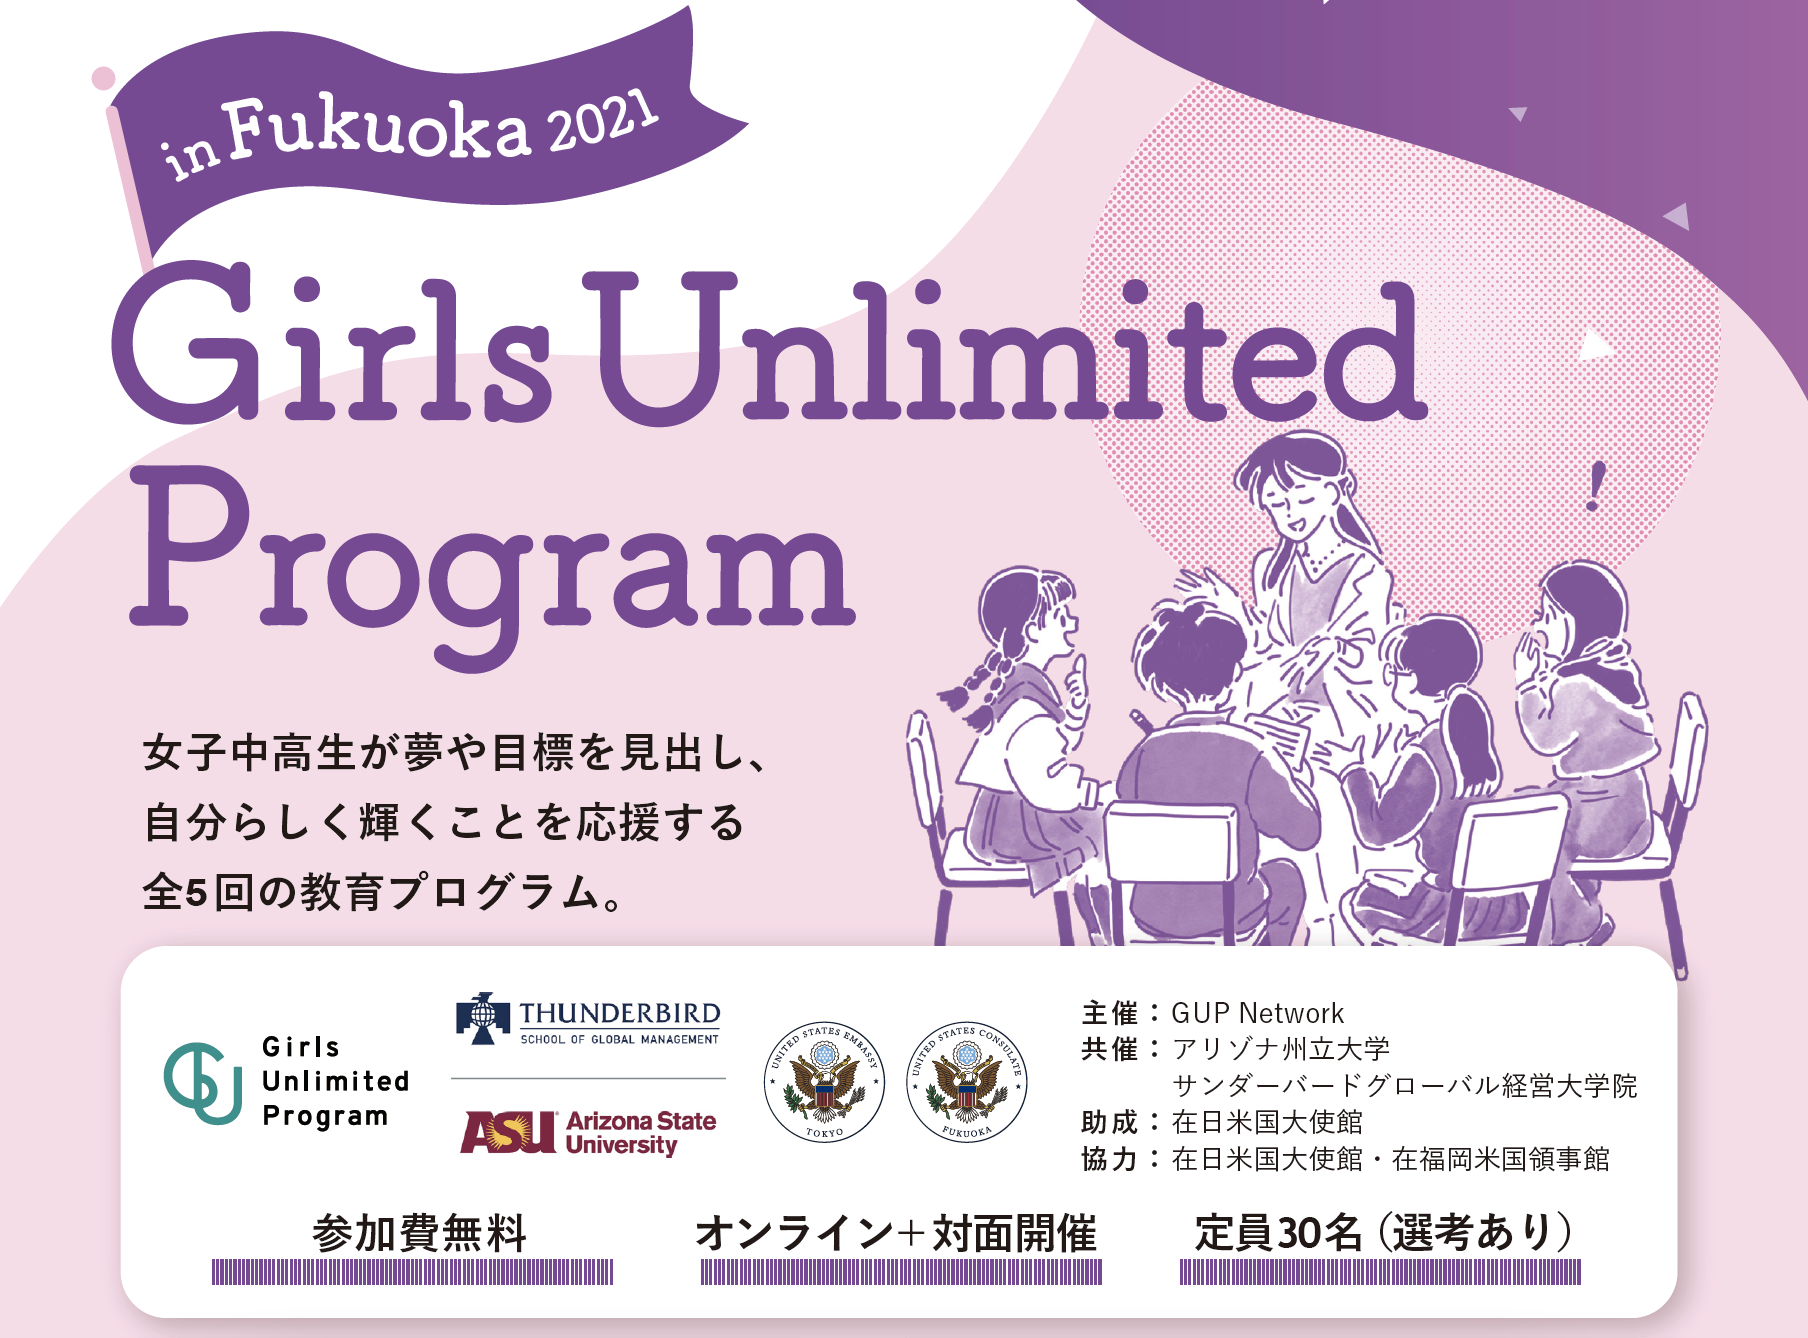 【お知らせ】Girls Unlimited Program in Fukuoka 2021の募集を開始しました